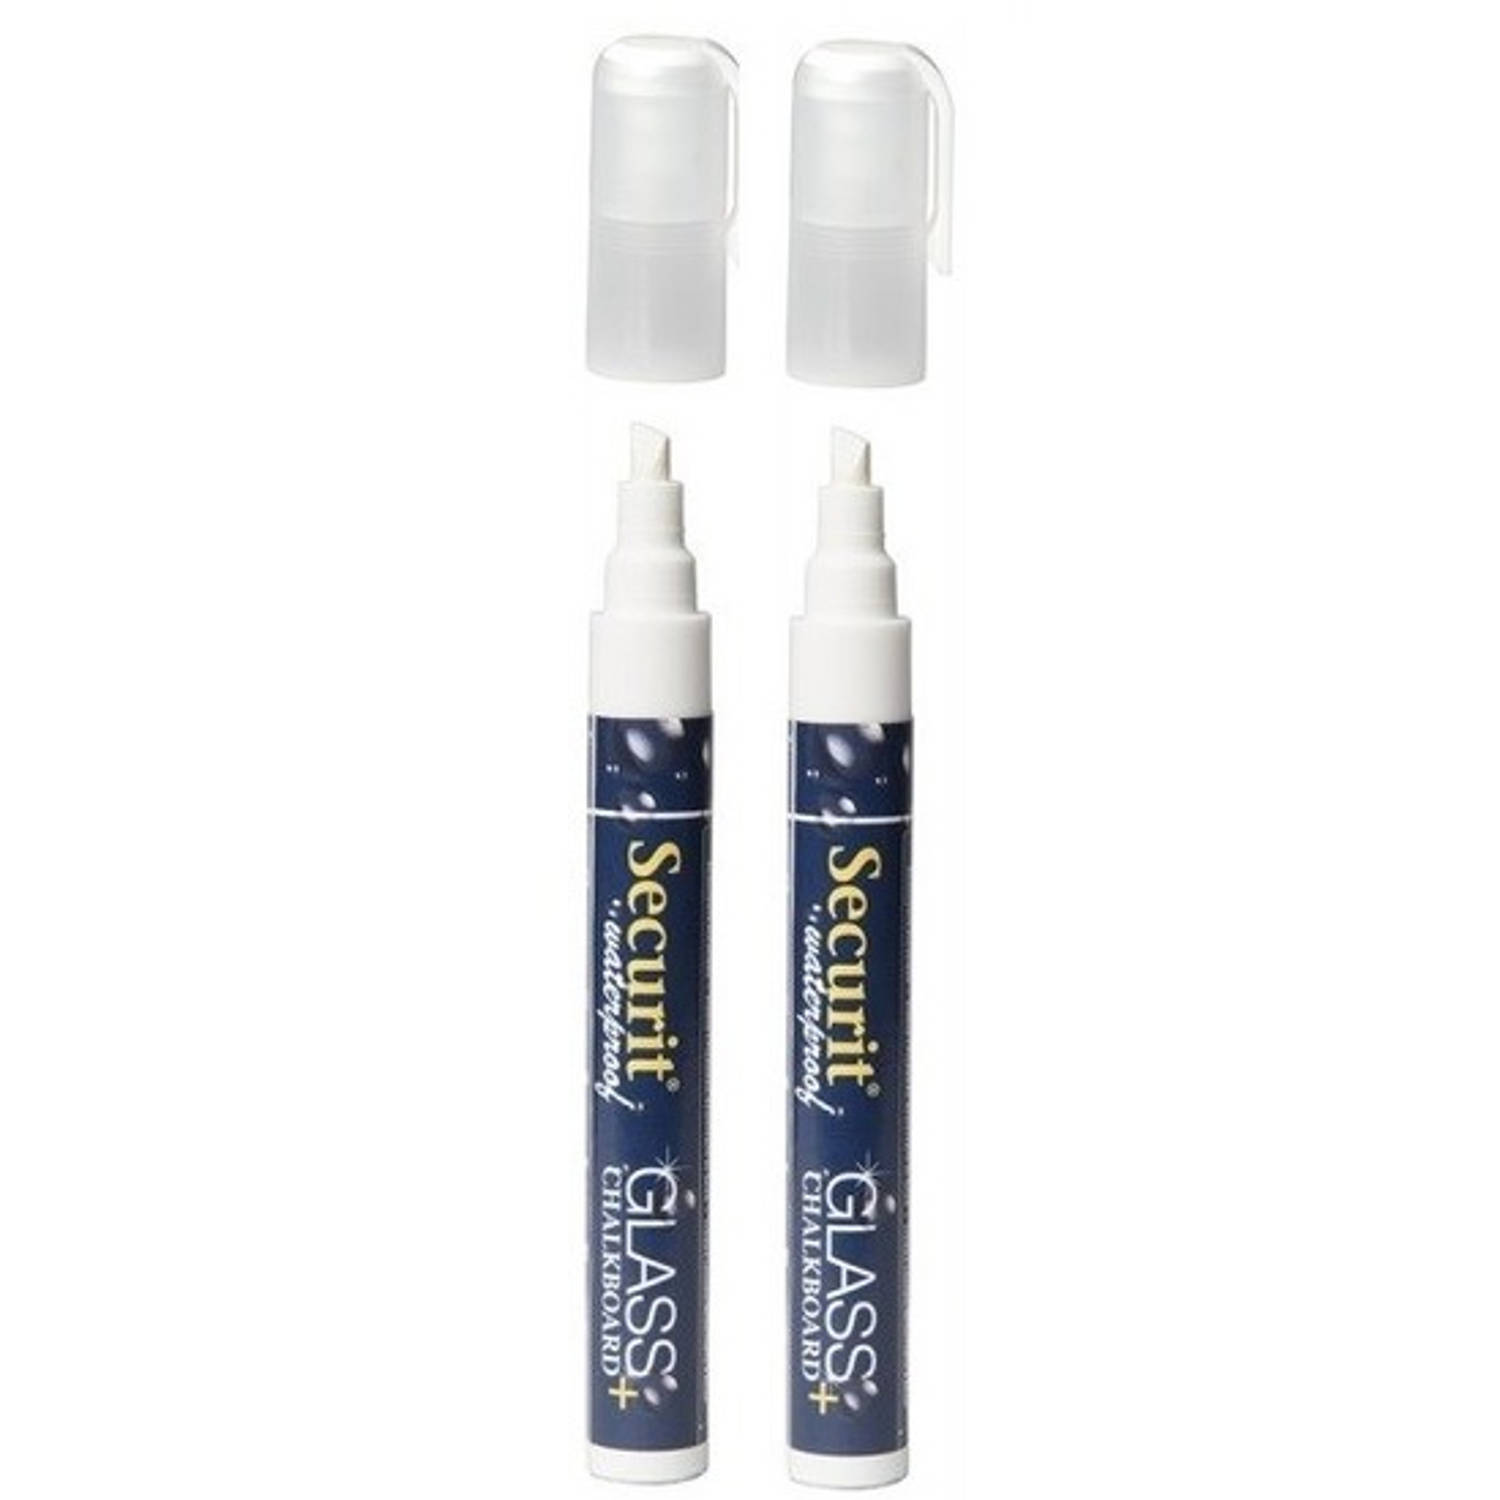 watervaste krijtstift punt 2-6 mm - Krijtstiften | Blokker